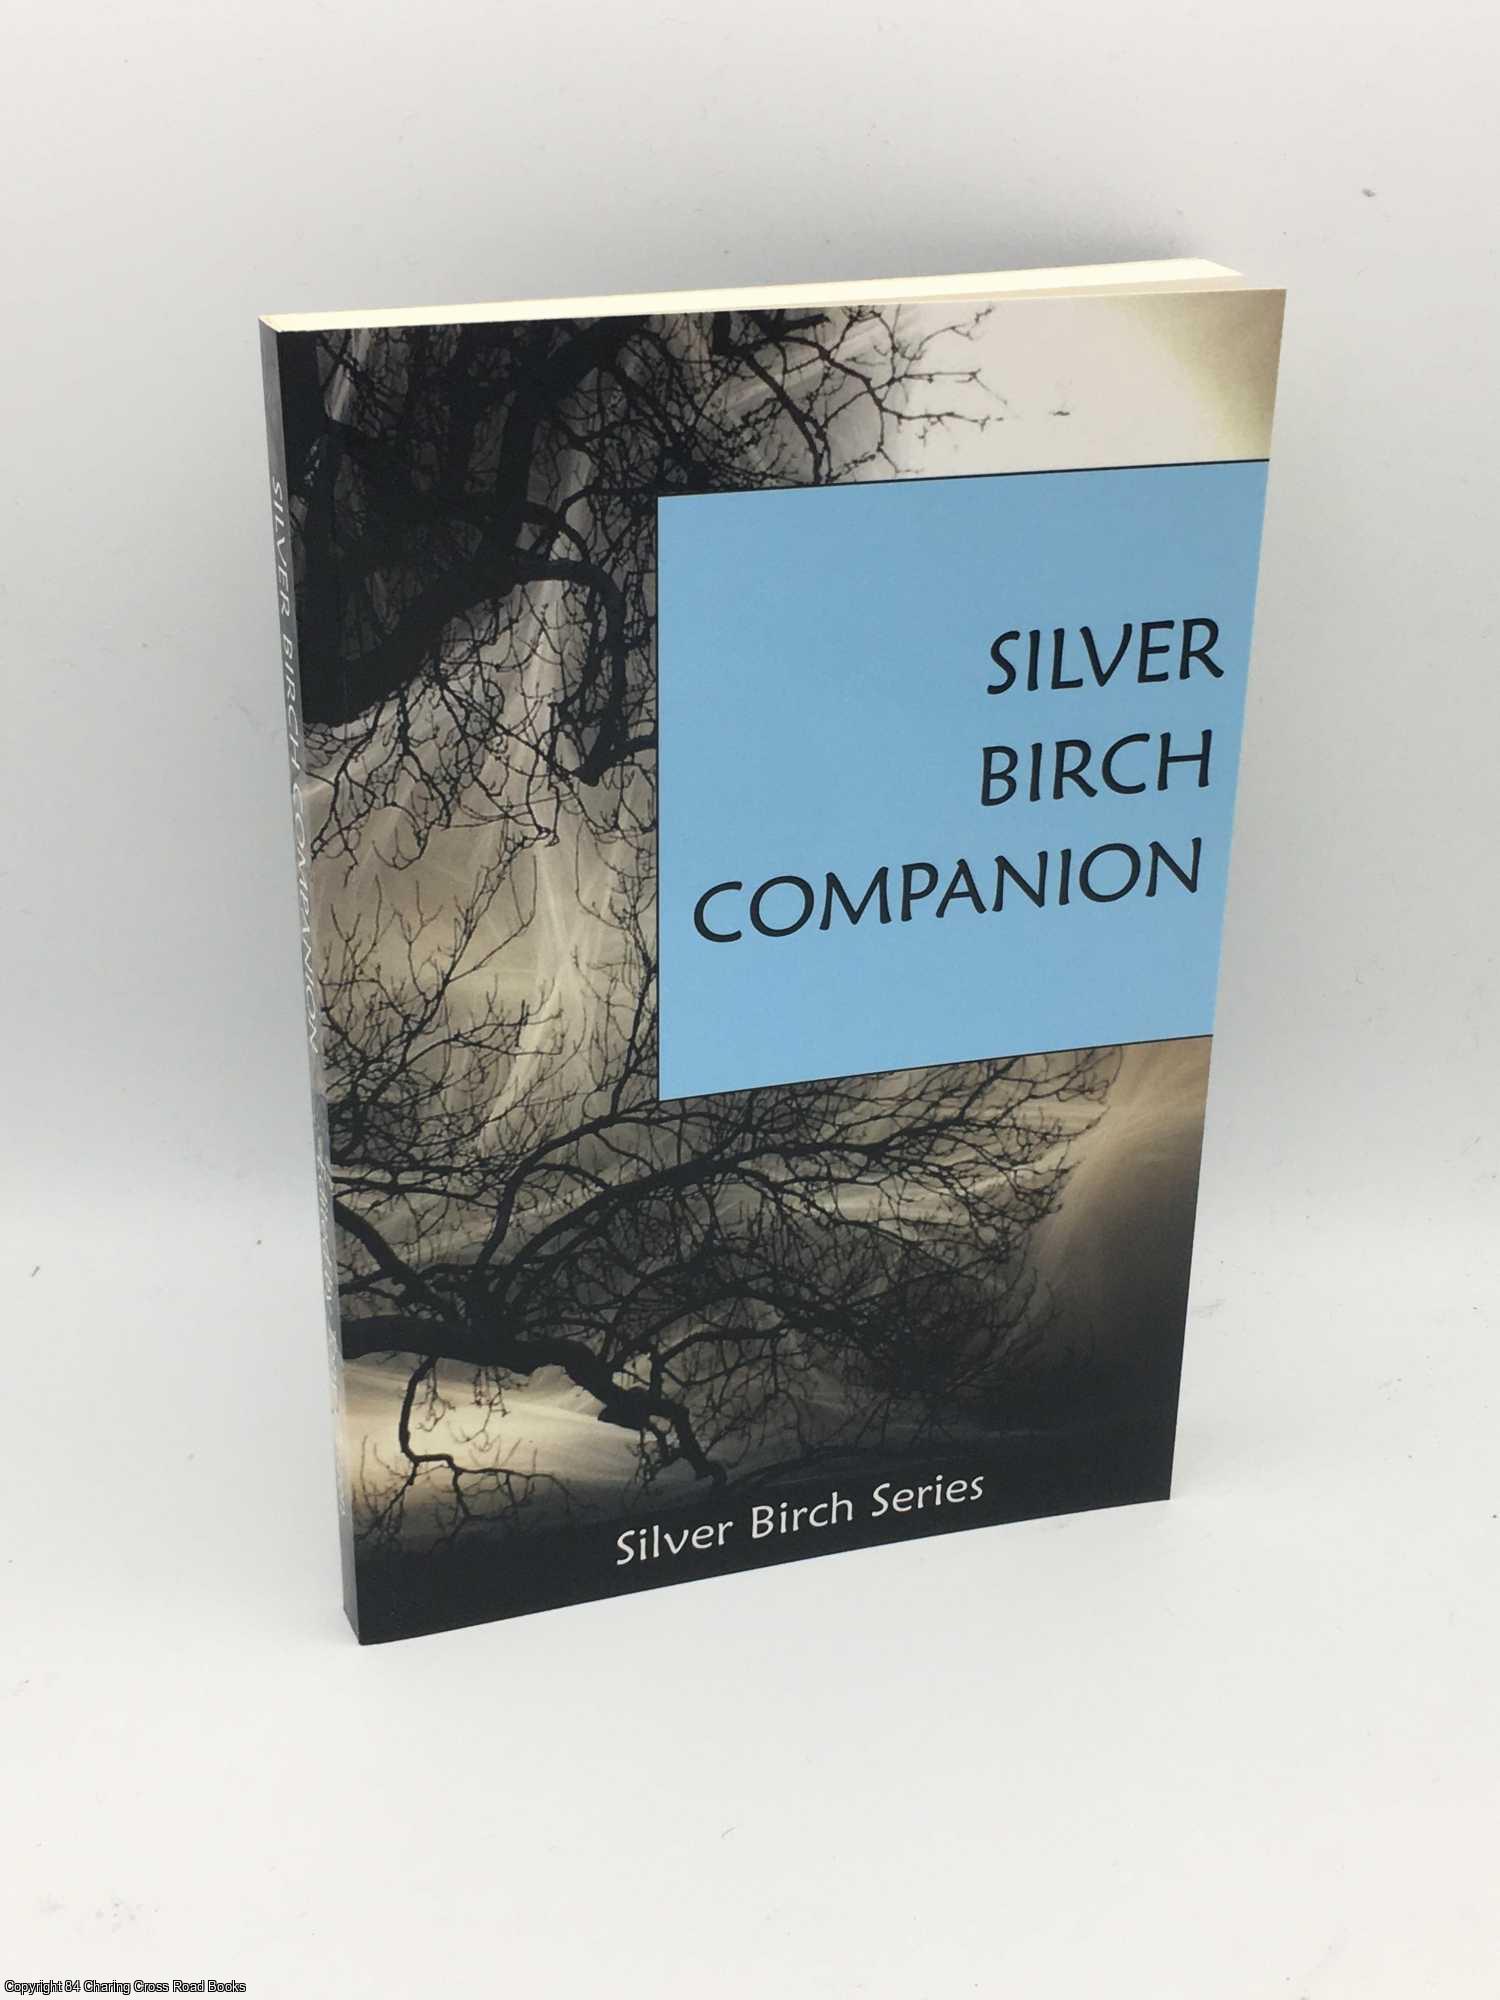 Ortzen, Tony - Silver Birch Companion